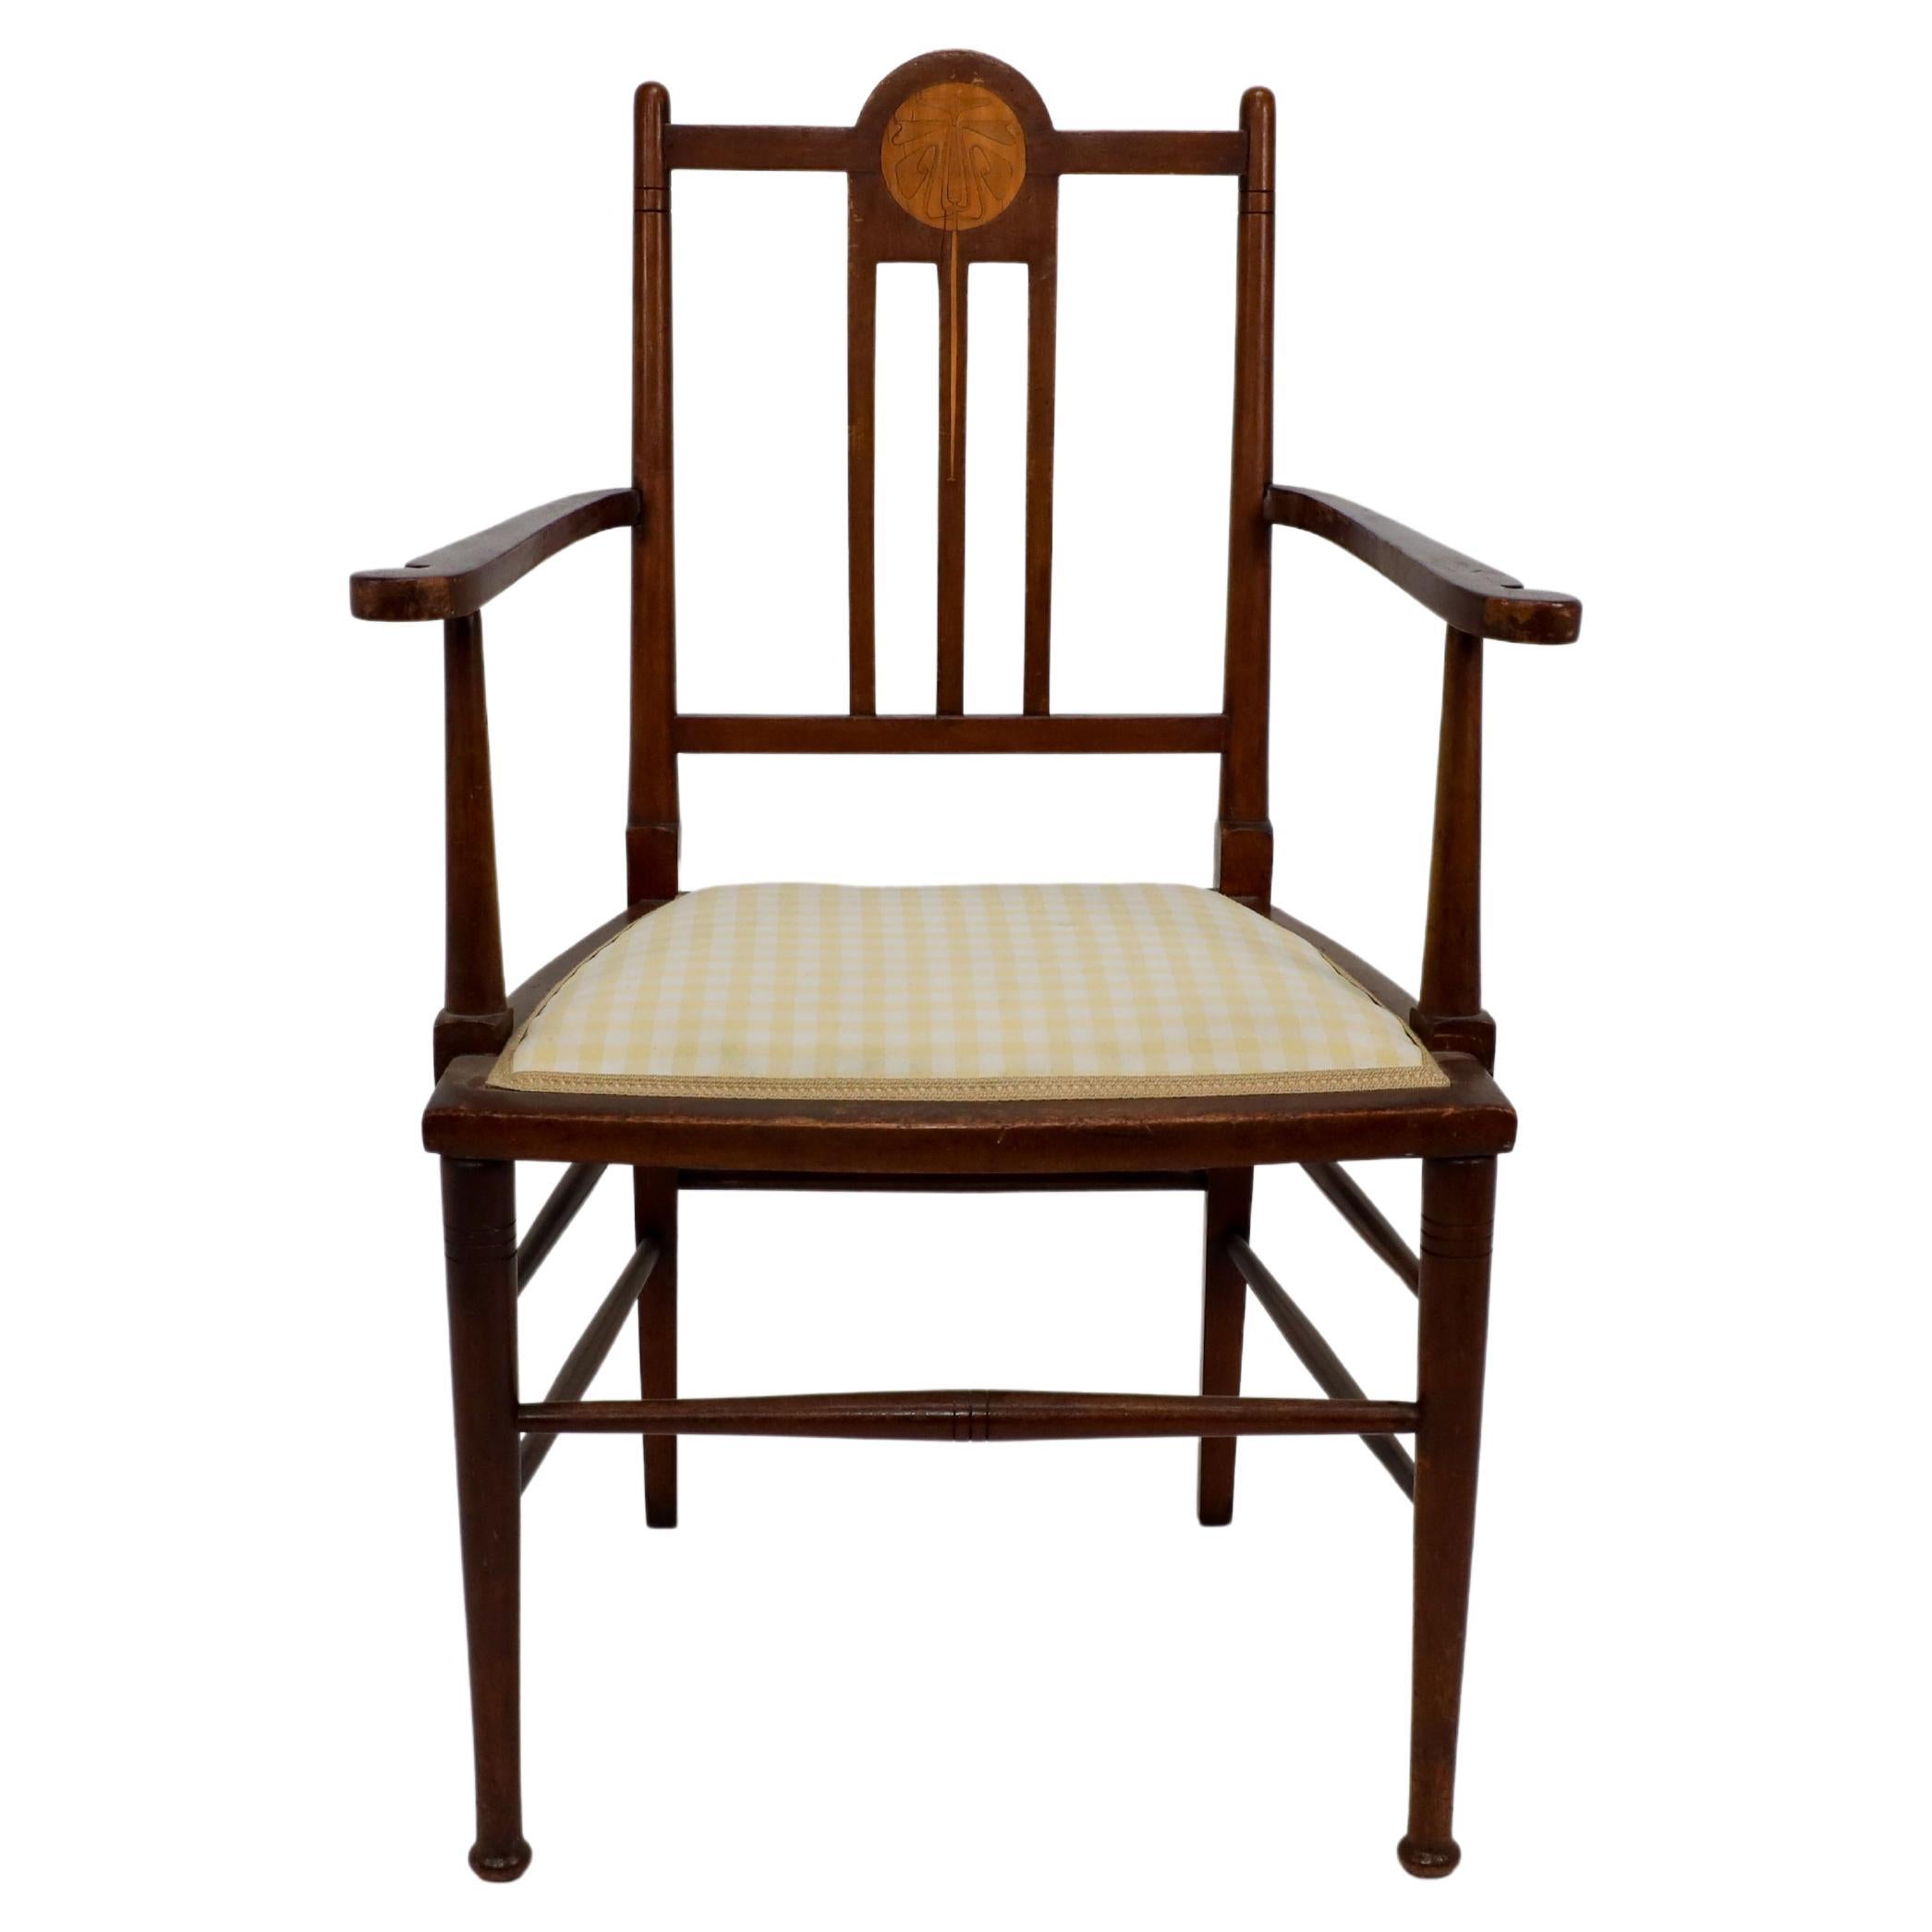 Liberty and Co im Stil von G M Ellwood. Ein Arts-and-Crafts-Sessel aus Nussbaumholz mit stilisierter Blumenintarsie auf dem